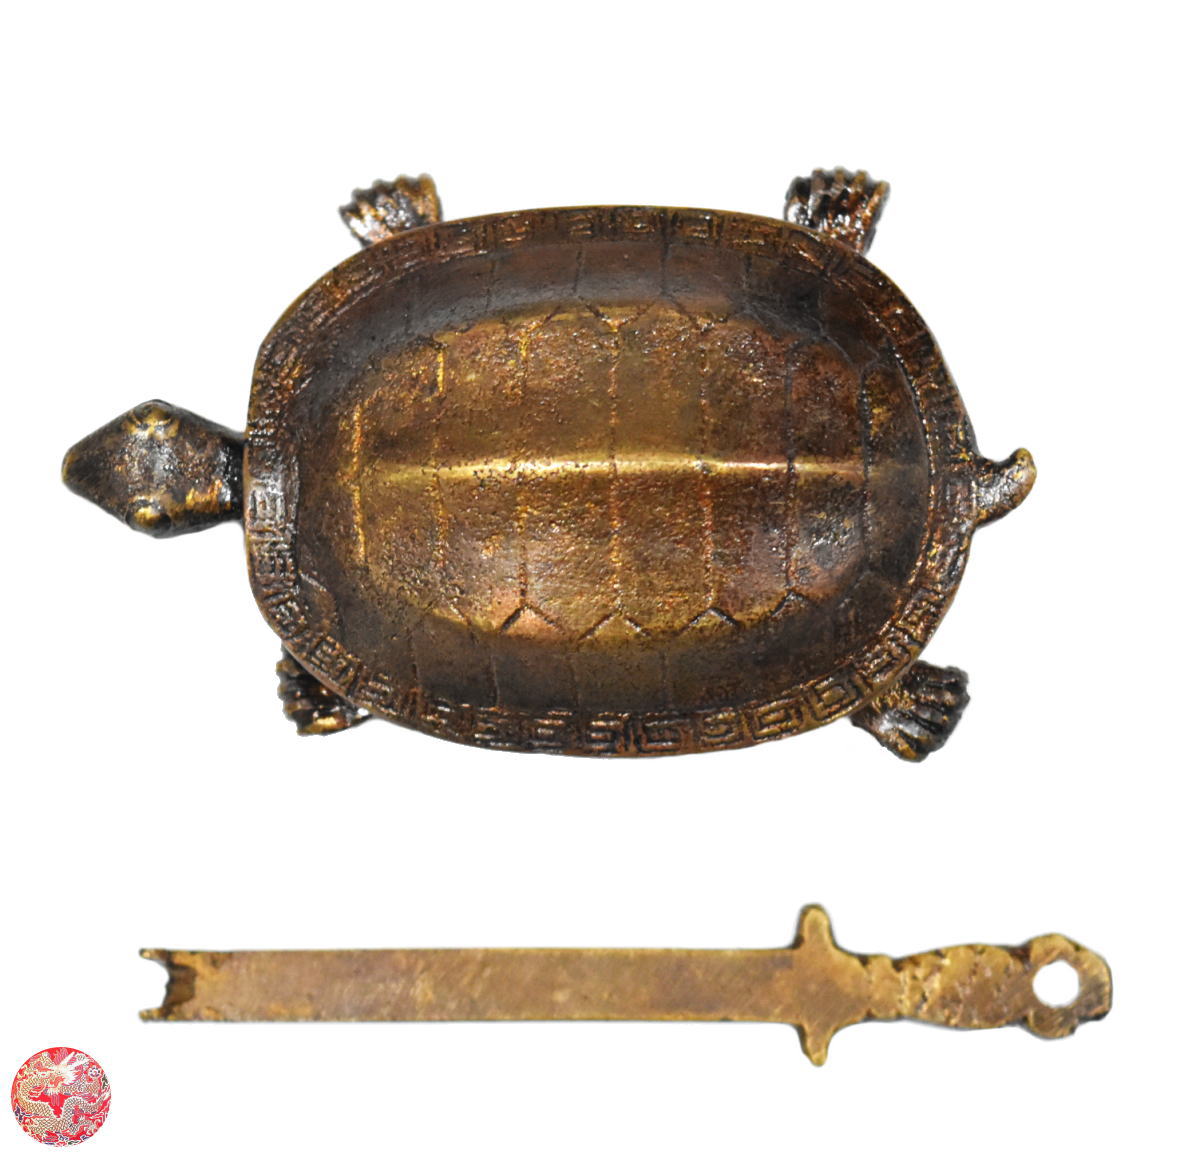 商品番号 ST007 商 品 名 明末清初 長寿万年亀 アンティーク風 錠前 サ イ ズ 約長さ7.5cm*高さ3cm*幅5cm 重　　量 約115g 材　　質 銅製 商品説明 　本商品は、明代末期から清代初期頃に使用されていた所謂“海老錠”と呼ばれるタイプの錠前です。（複製品）　特徴のある鍵と鍵穴がポイント。細かく彫られた万寿亀の姿もアンティーク風小物としての雰囲気十分な楽しさのある錠前です。　中国の錠前の歴史は古く、盗難防止などの本来の目的ばかりではなく様々な意味を持ってました。　そのため、早くから装飾を施した錠前が作られるようになり、宮廷を始め、様々な所で使われていました。　“鶴は千年、亀は万年”。　亀（カメ）は昔から、中国でも日本でも長寿・守護・支援・権力の維持・財運などの吉兆で、あらゆる開運・幸運を招いてくれる神聖な動物とされています。　風水では、亀（カメ）の甲羅が外側が多数の六角形紋様のうろこで作られ、内側が骨で形成され、両方が堅固に合わさっています。邪気のエネルギーを跳ね返すと考えられており、魔除け、厄除けアイテムとしても使われています。　中国では、亀は背中の上に「天地」を乗せて運ぶ生き物とたとえられています。　つまり上側の甲羅はあたかも天のように円形にカーブしていて、下側の甲羅は地のように平らになっているからです。　球形は宇宙からのエネルギーをより多く吸収しやすいと言われています。※ご注意：◎商品は新品ですが、趣きを出すため、骨董品のような加工が施されています。◎本品は当時のままの精巧なレプリカです。内部の構造も数百年前のものであり、現代においては決して防犯効果の高い錠前とは言えません。鍵としてご使用される場合は、そのような事情を考慮の上、お使いください。 ※ 配送・送料について　◎この商品は、「日本郵便レターパックプラス」での発送となります。送料は全国一律0円です[サイズ:340mm×248mm（A4ファイルサイズ）・重量:4kg以内・配達方法:対面でお届けし、受領印または署名をいただきます。・追跡サービス:あり・複数の商品を、まとめて1つに発送する事（同一梱包）可能]。*「代金引換」・「時間指定」はご利用出来ません。　 当商品の配送方法（おすすめ）：